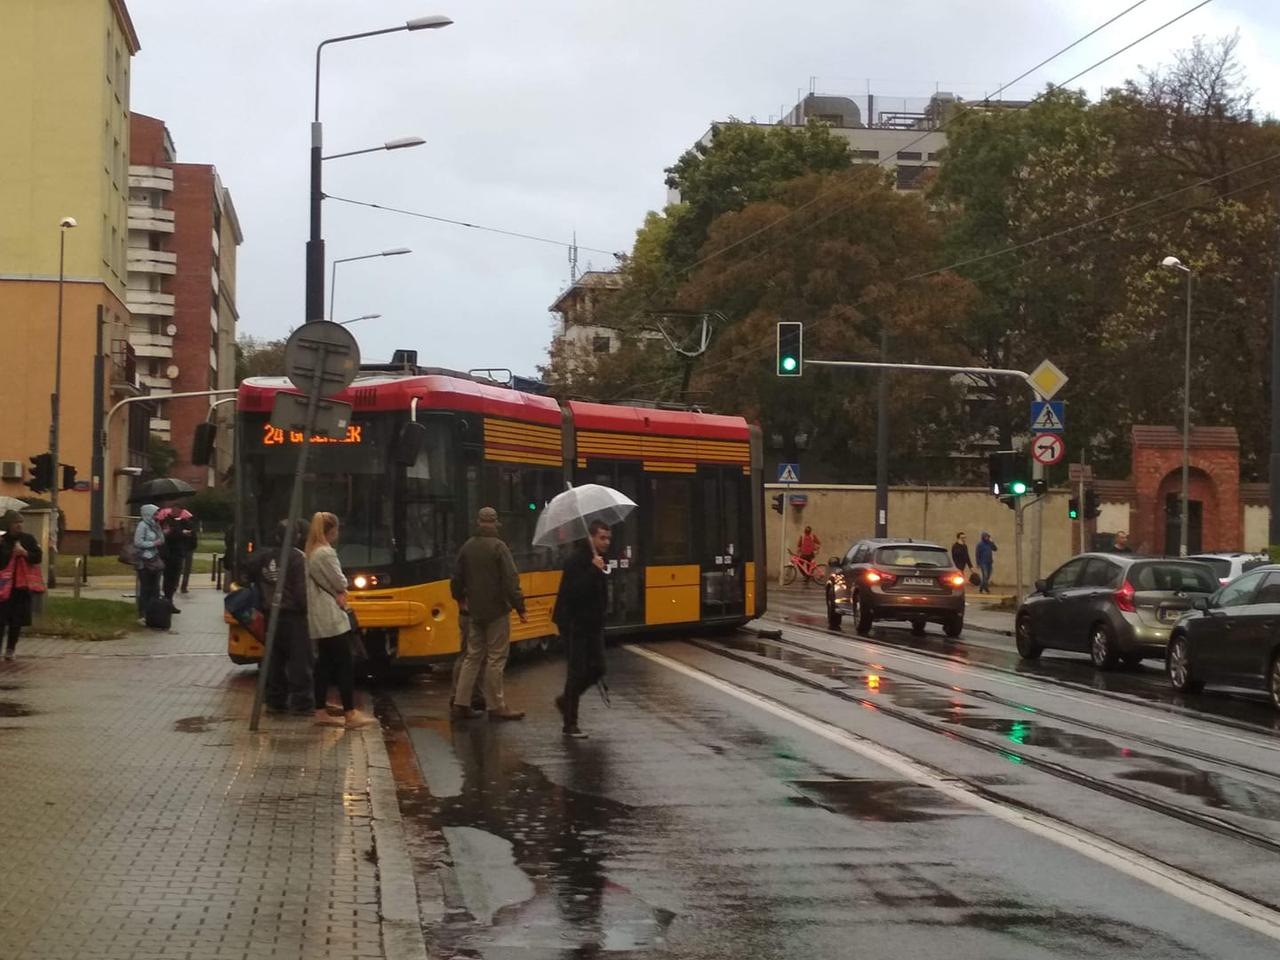 Wykolejenie tramwaju w Warszawie. Samochód wjechał na